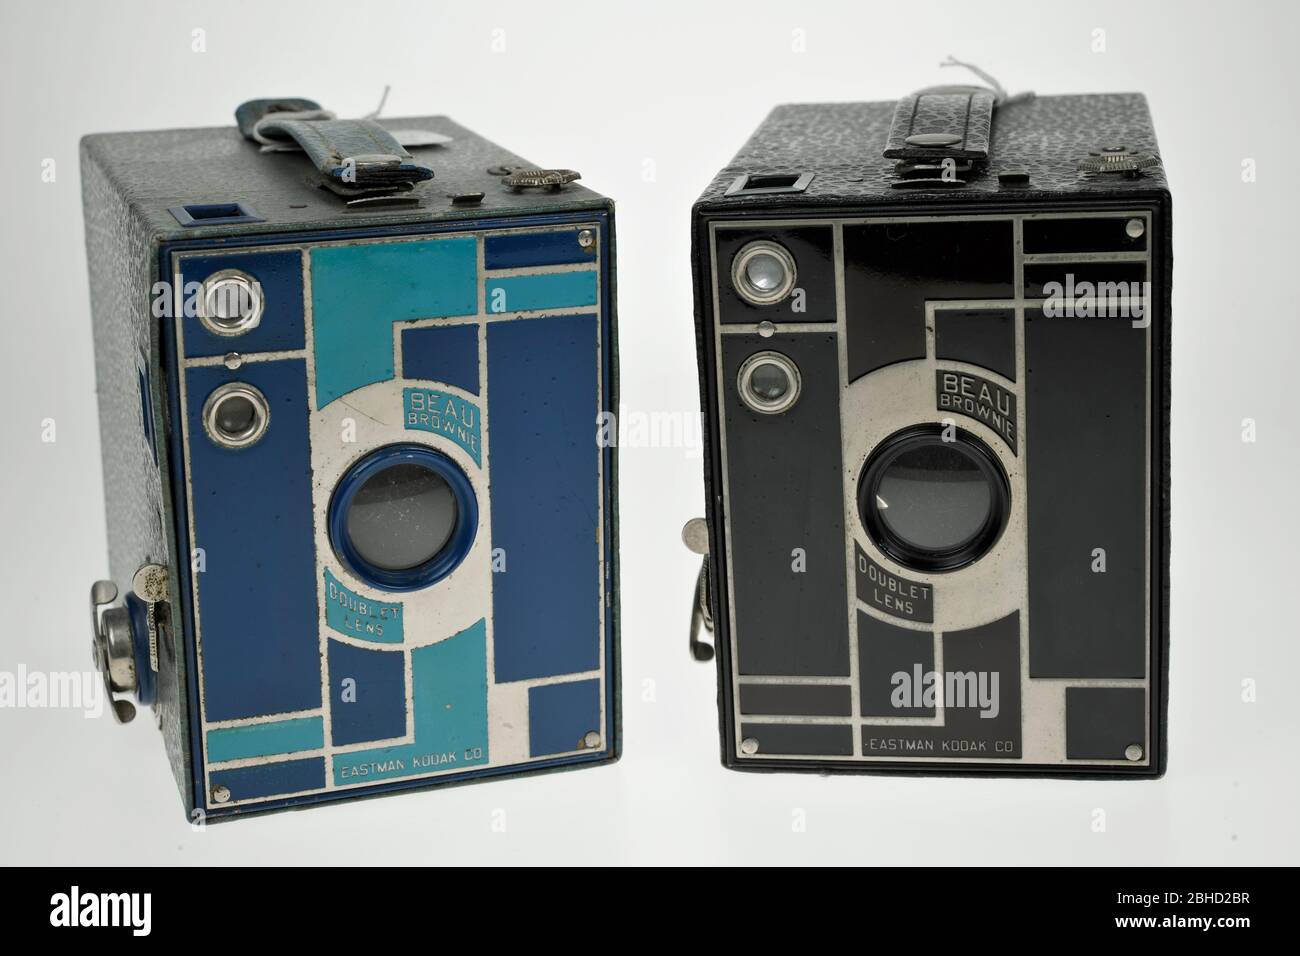 2 Beau Brownie No2 Kodak Boxkameras 1930-33 eine schwarze und eine blaue. Stockfoto